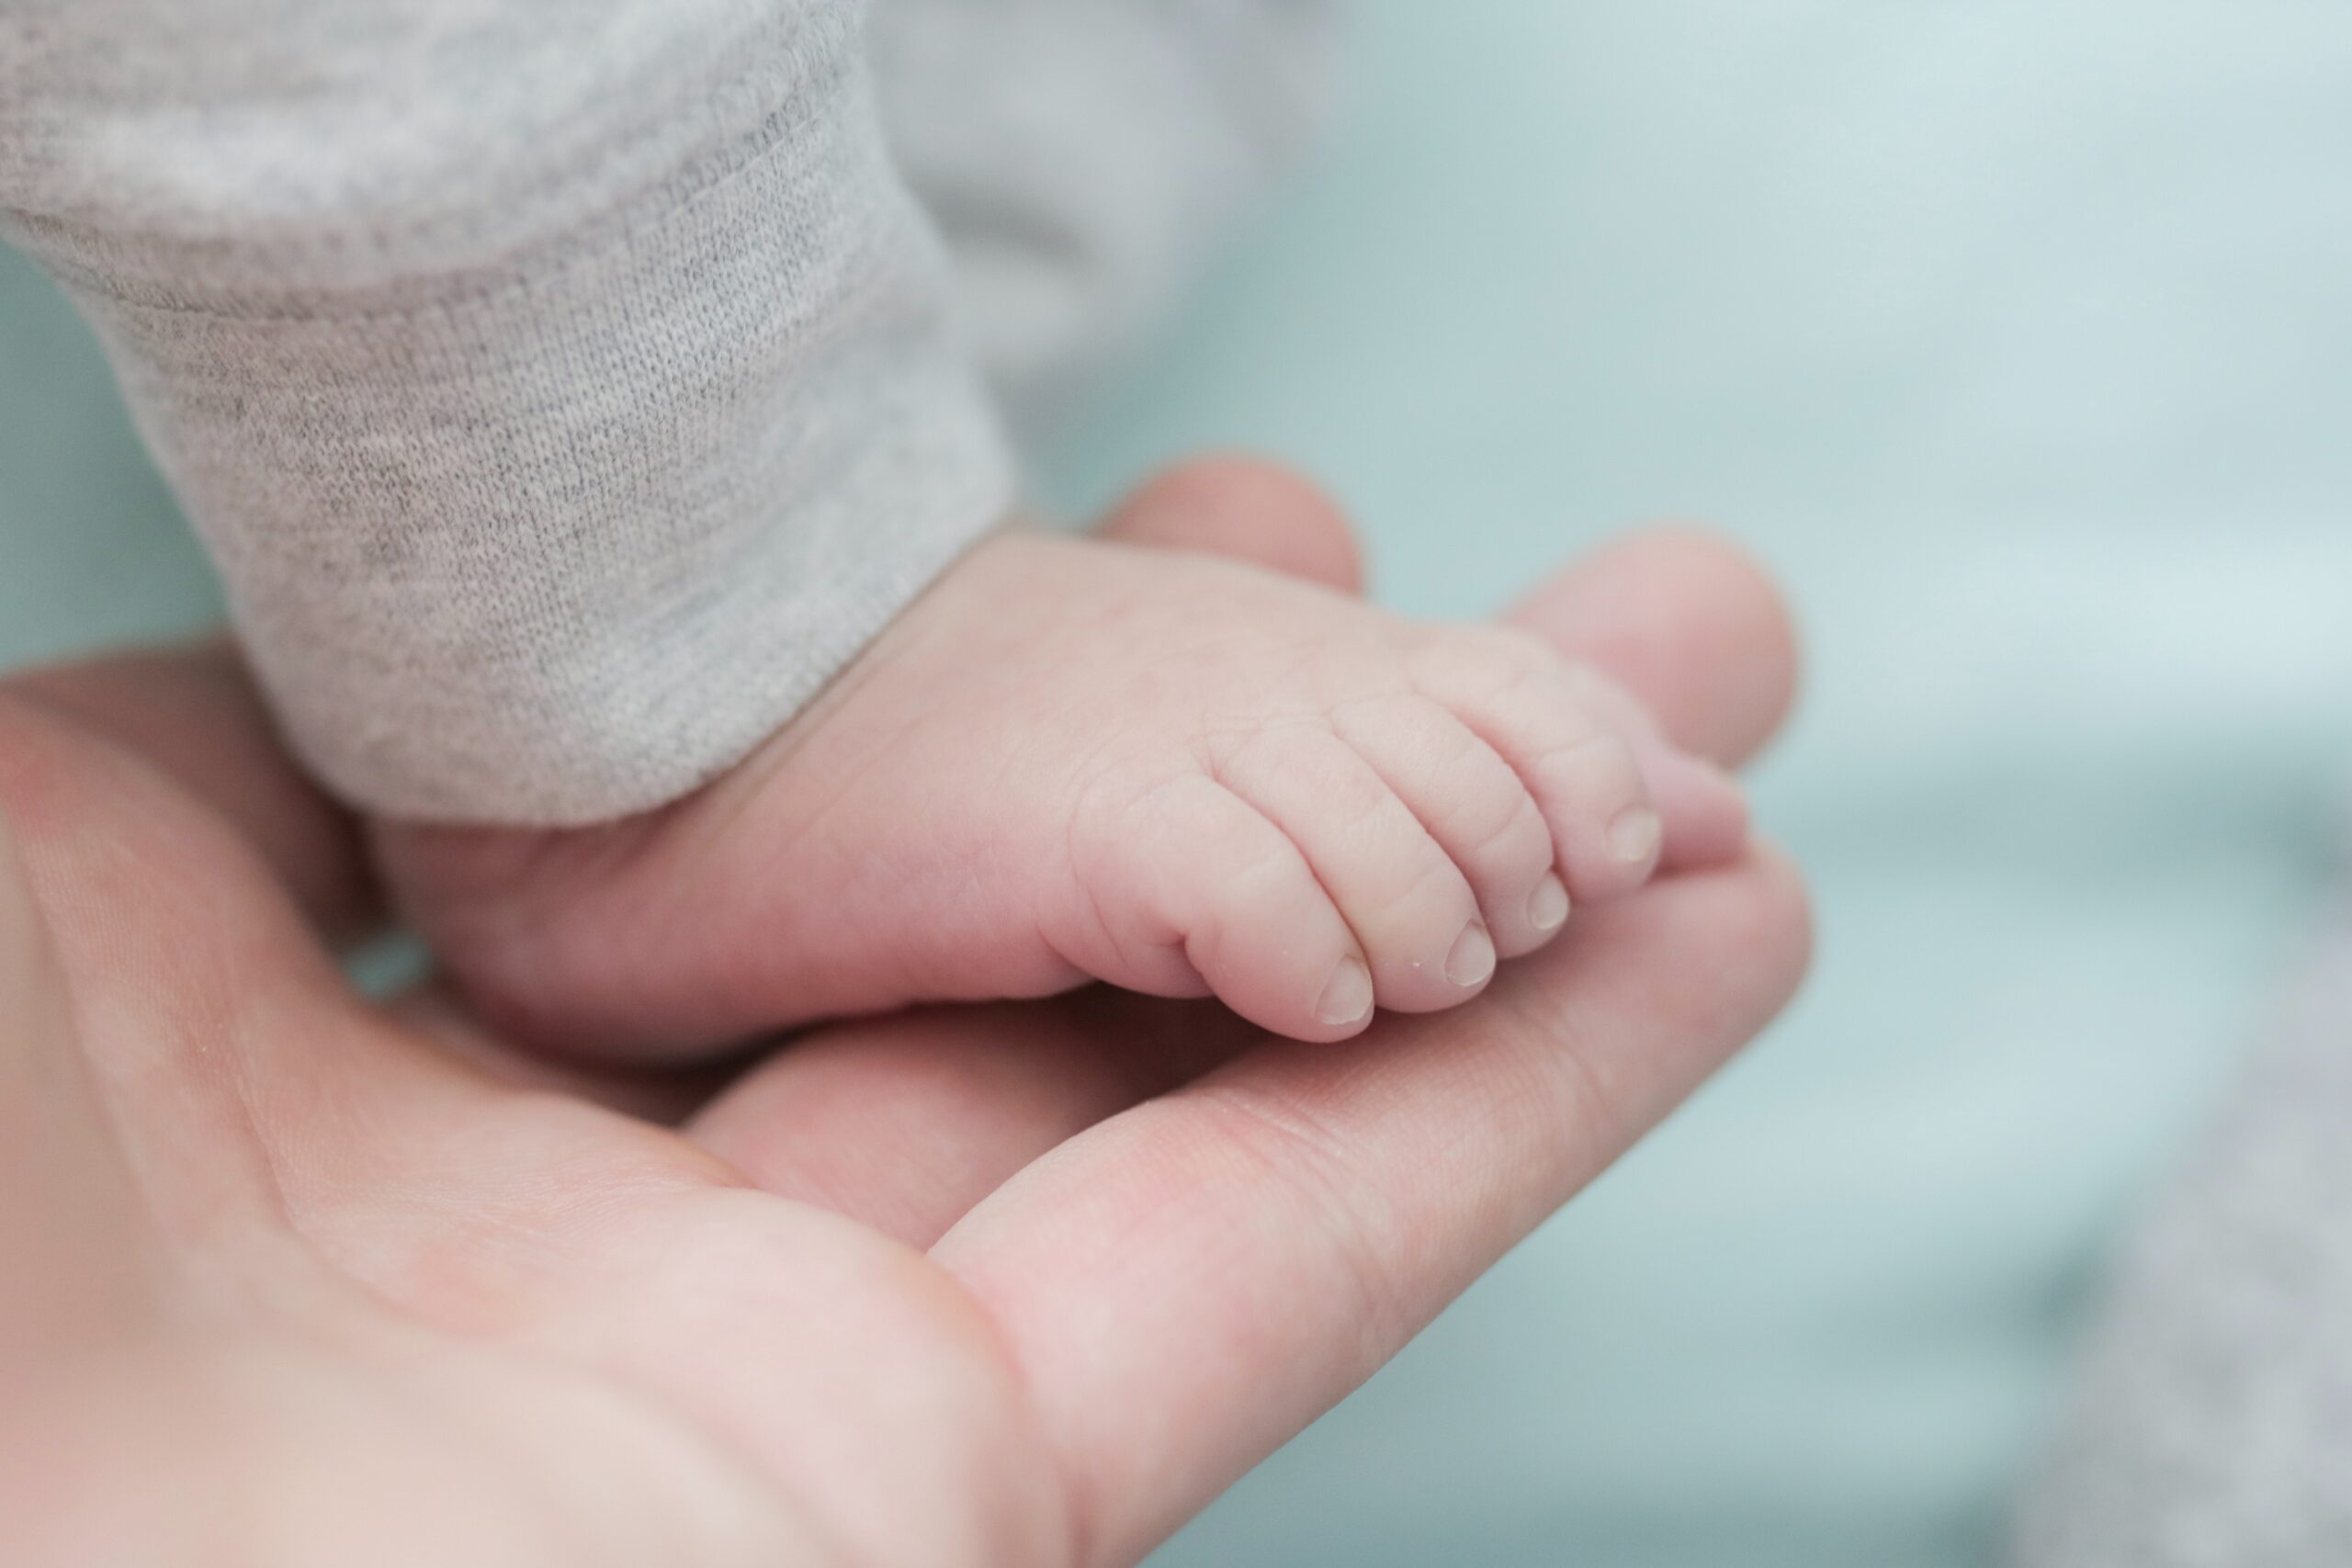 baby feet in parent's hand, Garbh Sanskar and Blessings